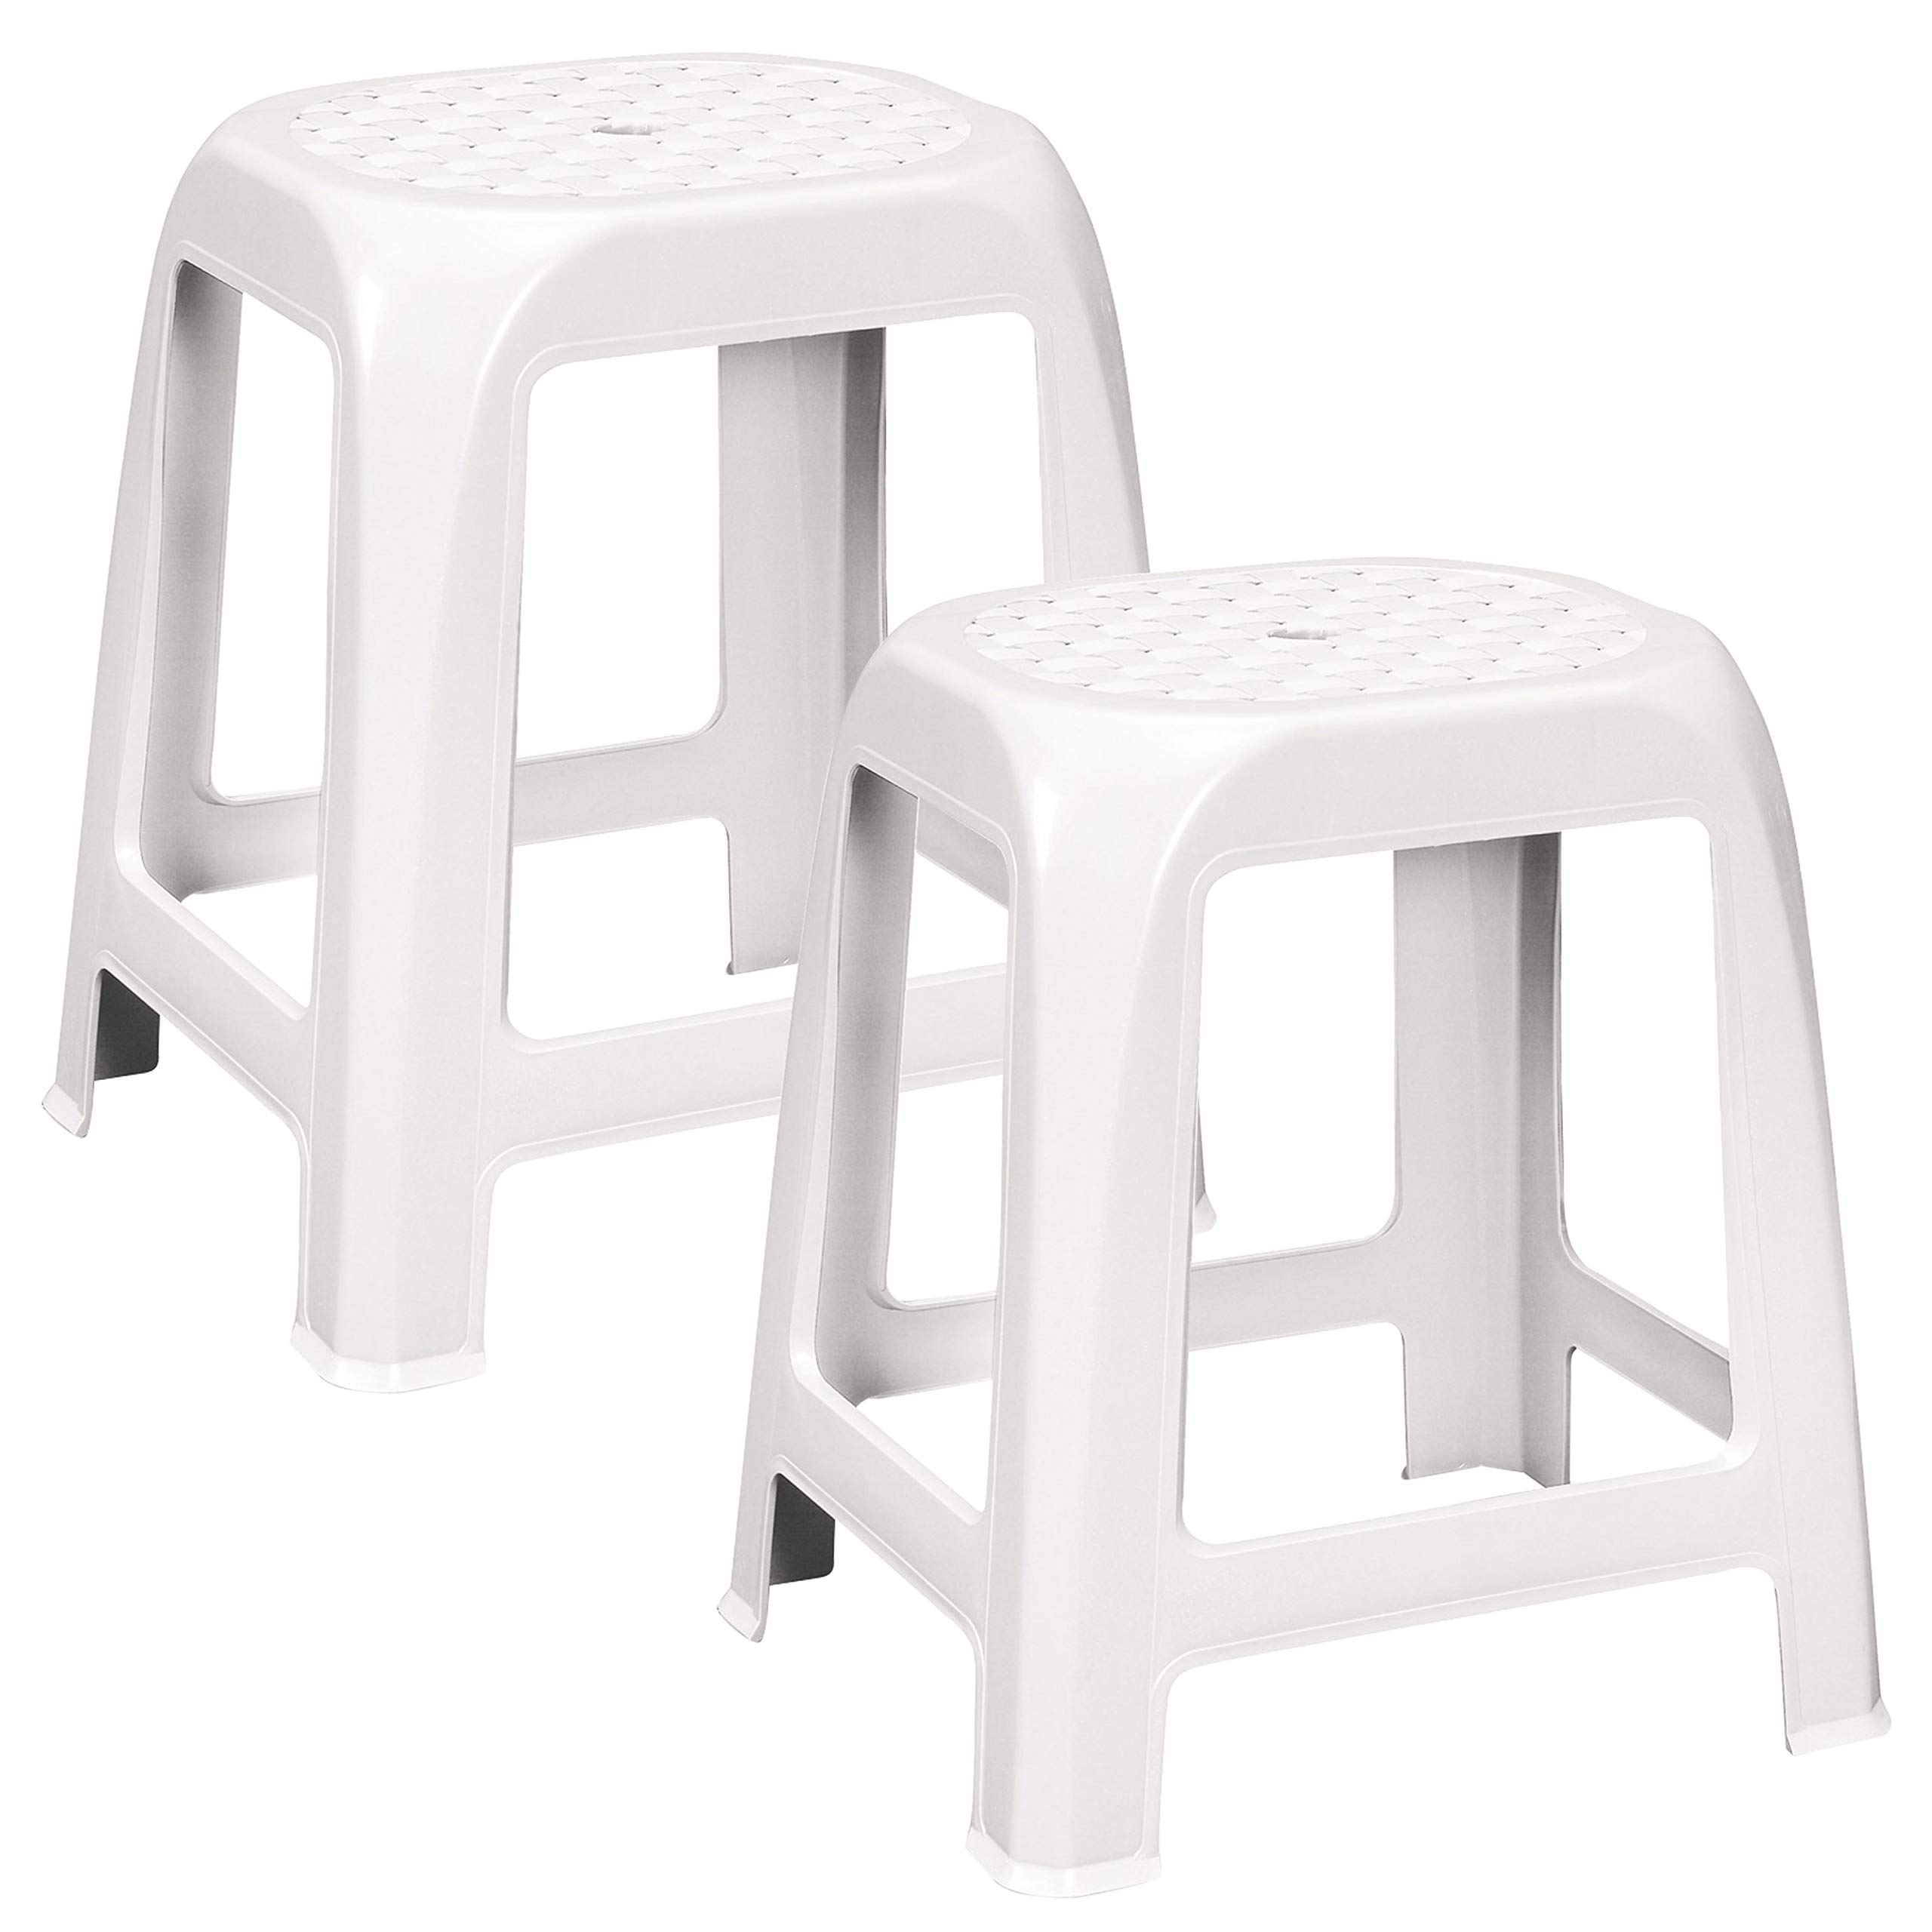 2X stapelbare Hocker - Sitzhocker weiß - Sitzhöhe 46 cm hoch - bis zu 100 kg - Duschsitz abwaschbar